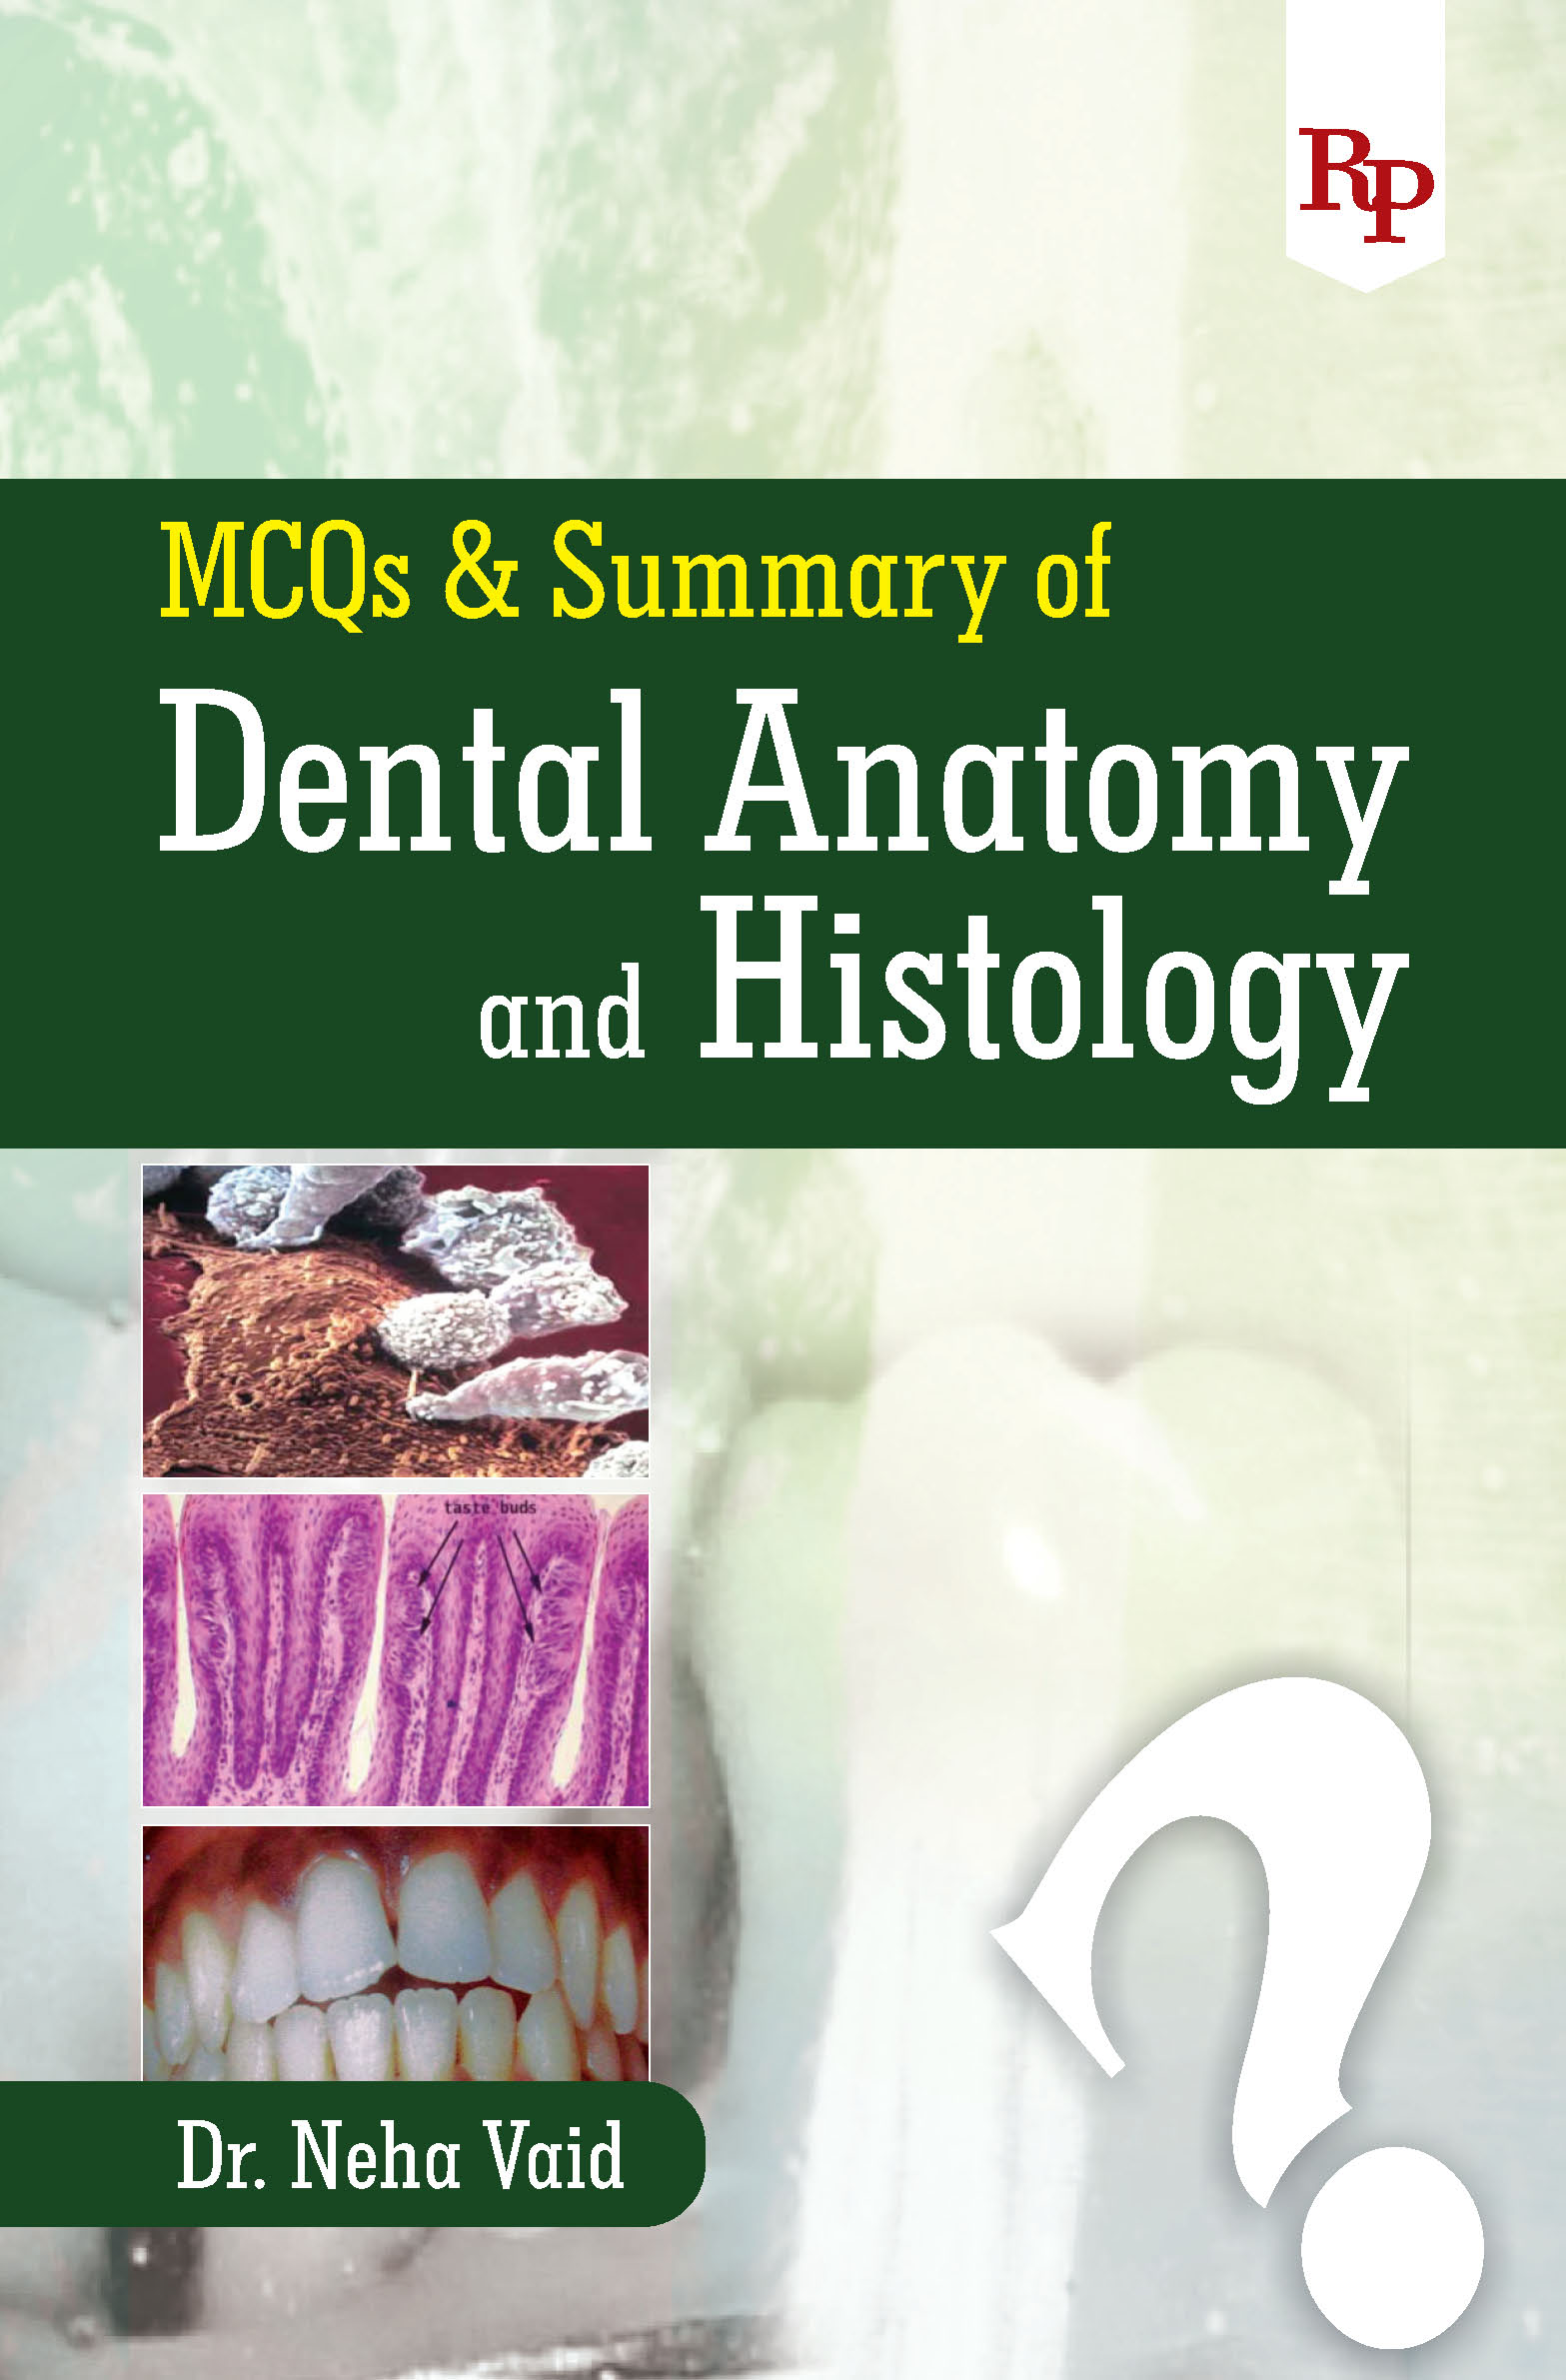 MCQS & Summary of Dental Anatomy and Histology